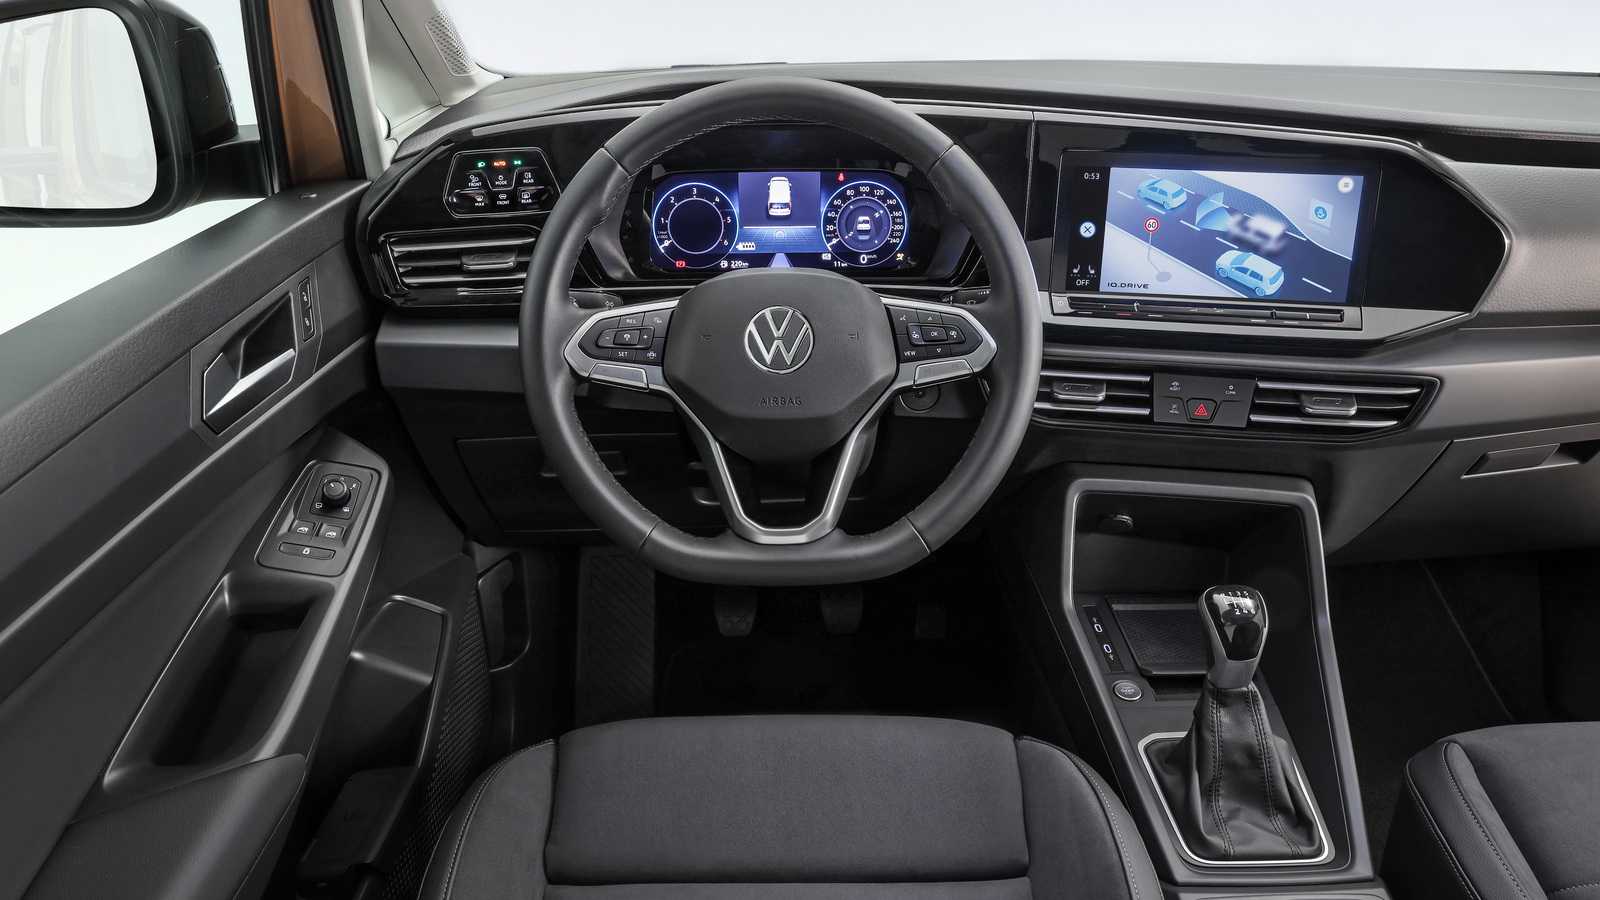 Volkswagen caddy iii – в быту и на работе